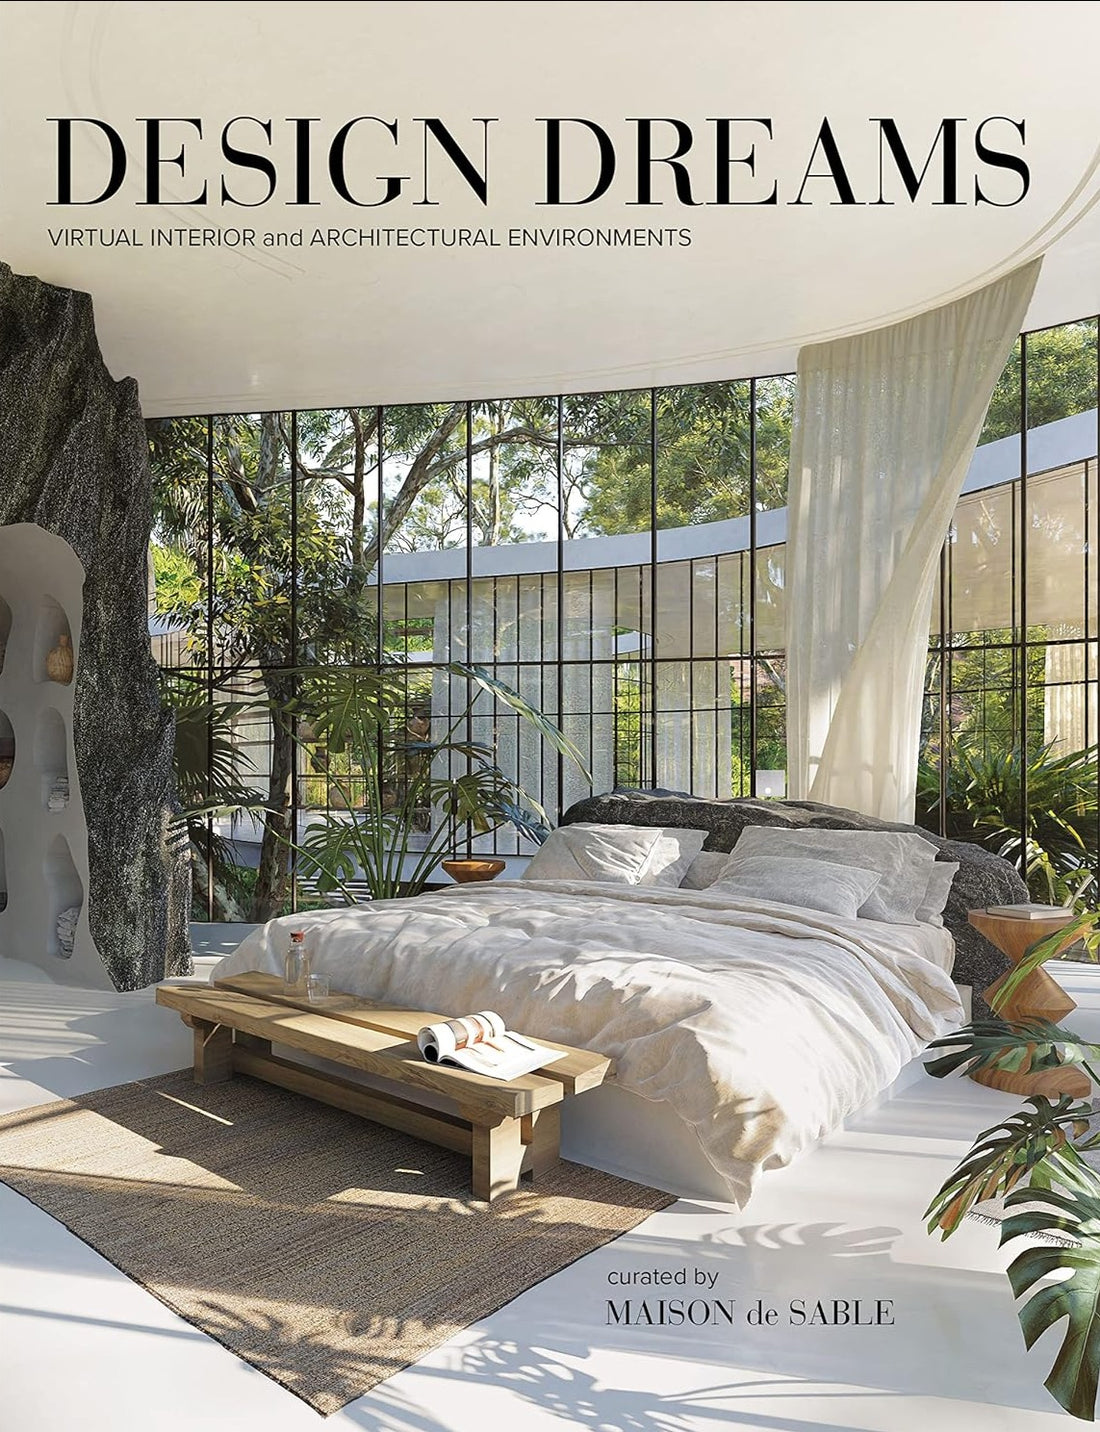 Design Dreams curated by MAISON de SABLE